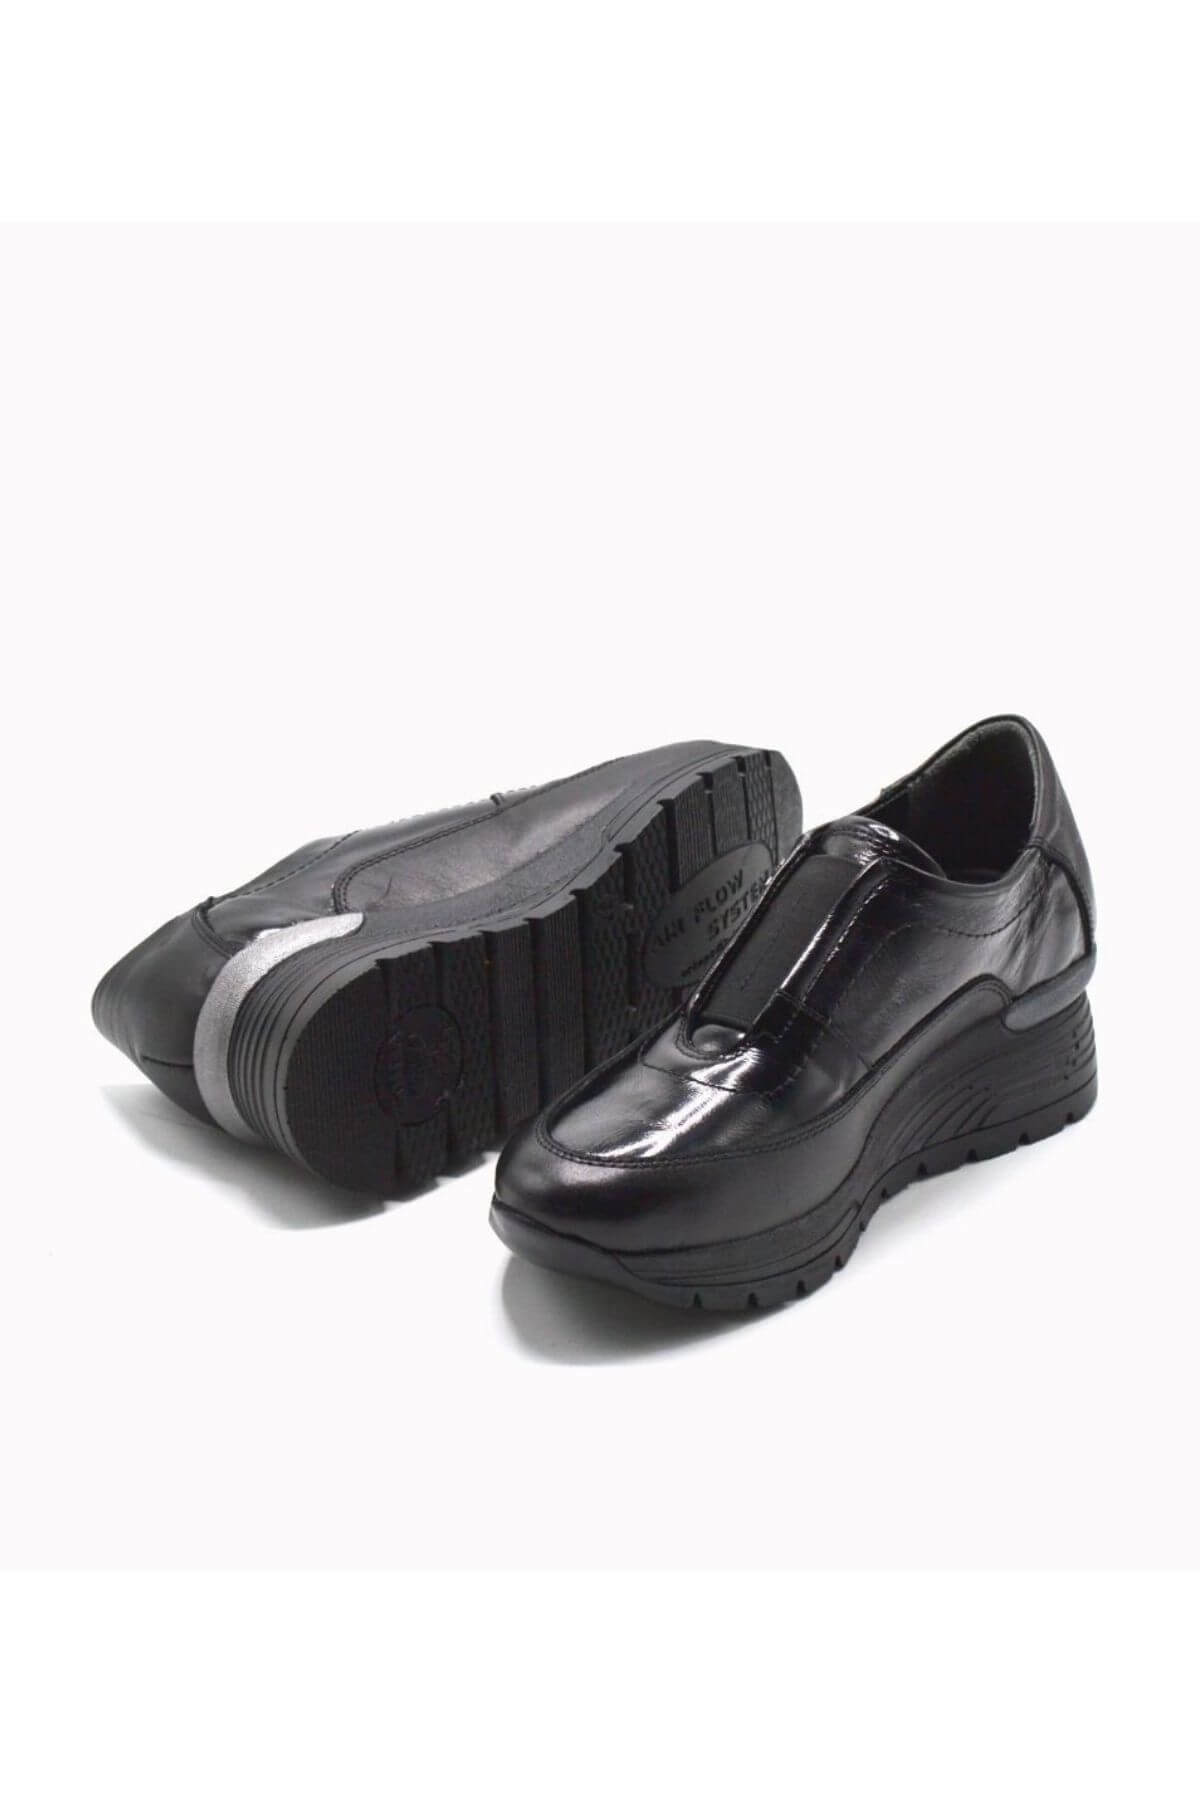 Kadın Airflow Deri Ayakkabı Siyah Rugan 2313031K